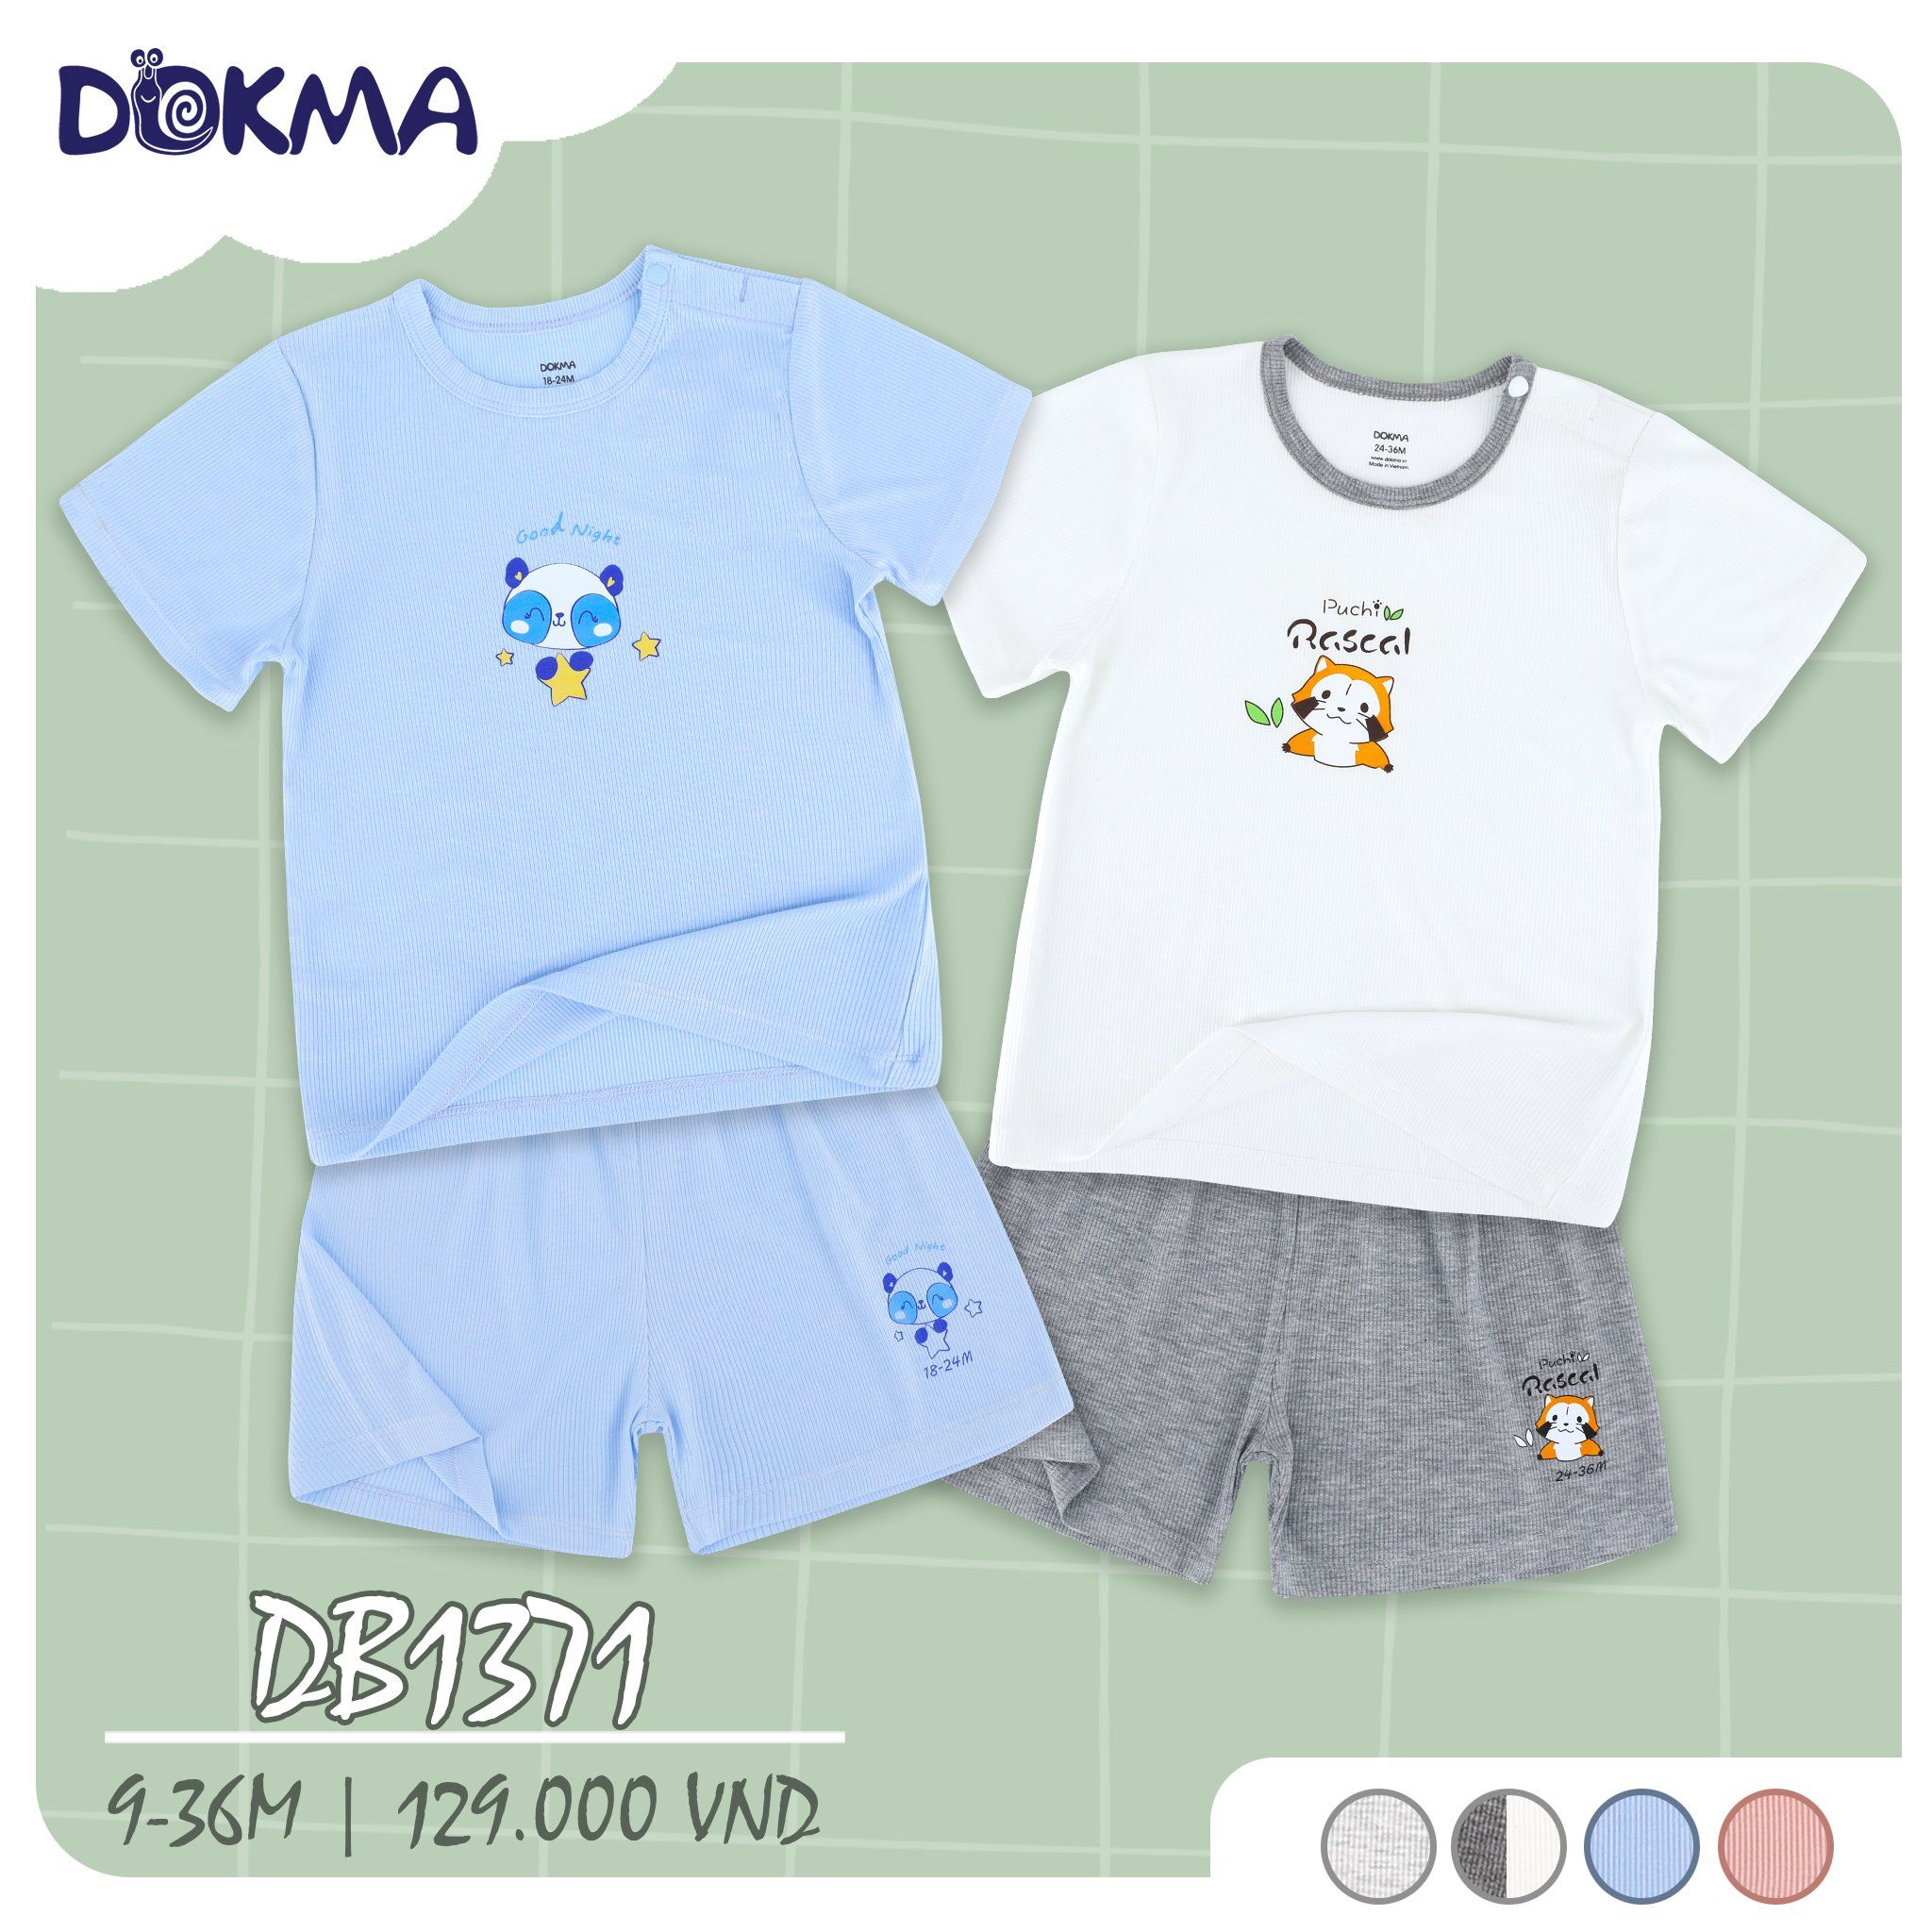  DB1371 - Đồ bộ ngắn tay mặc nhà bé trai và bé gái 9-36M 